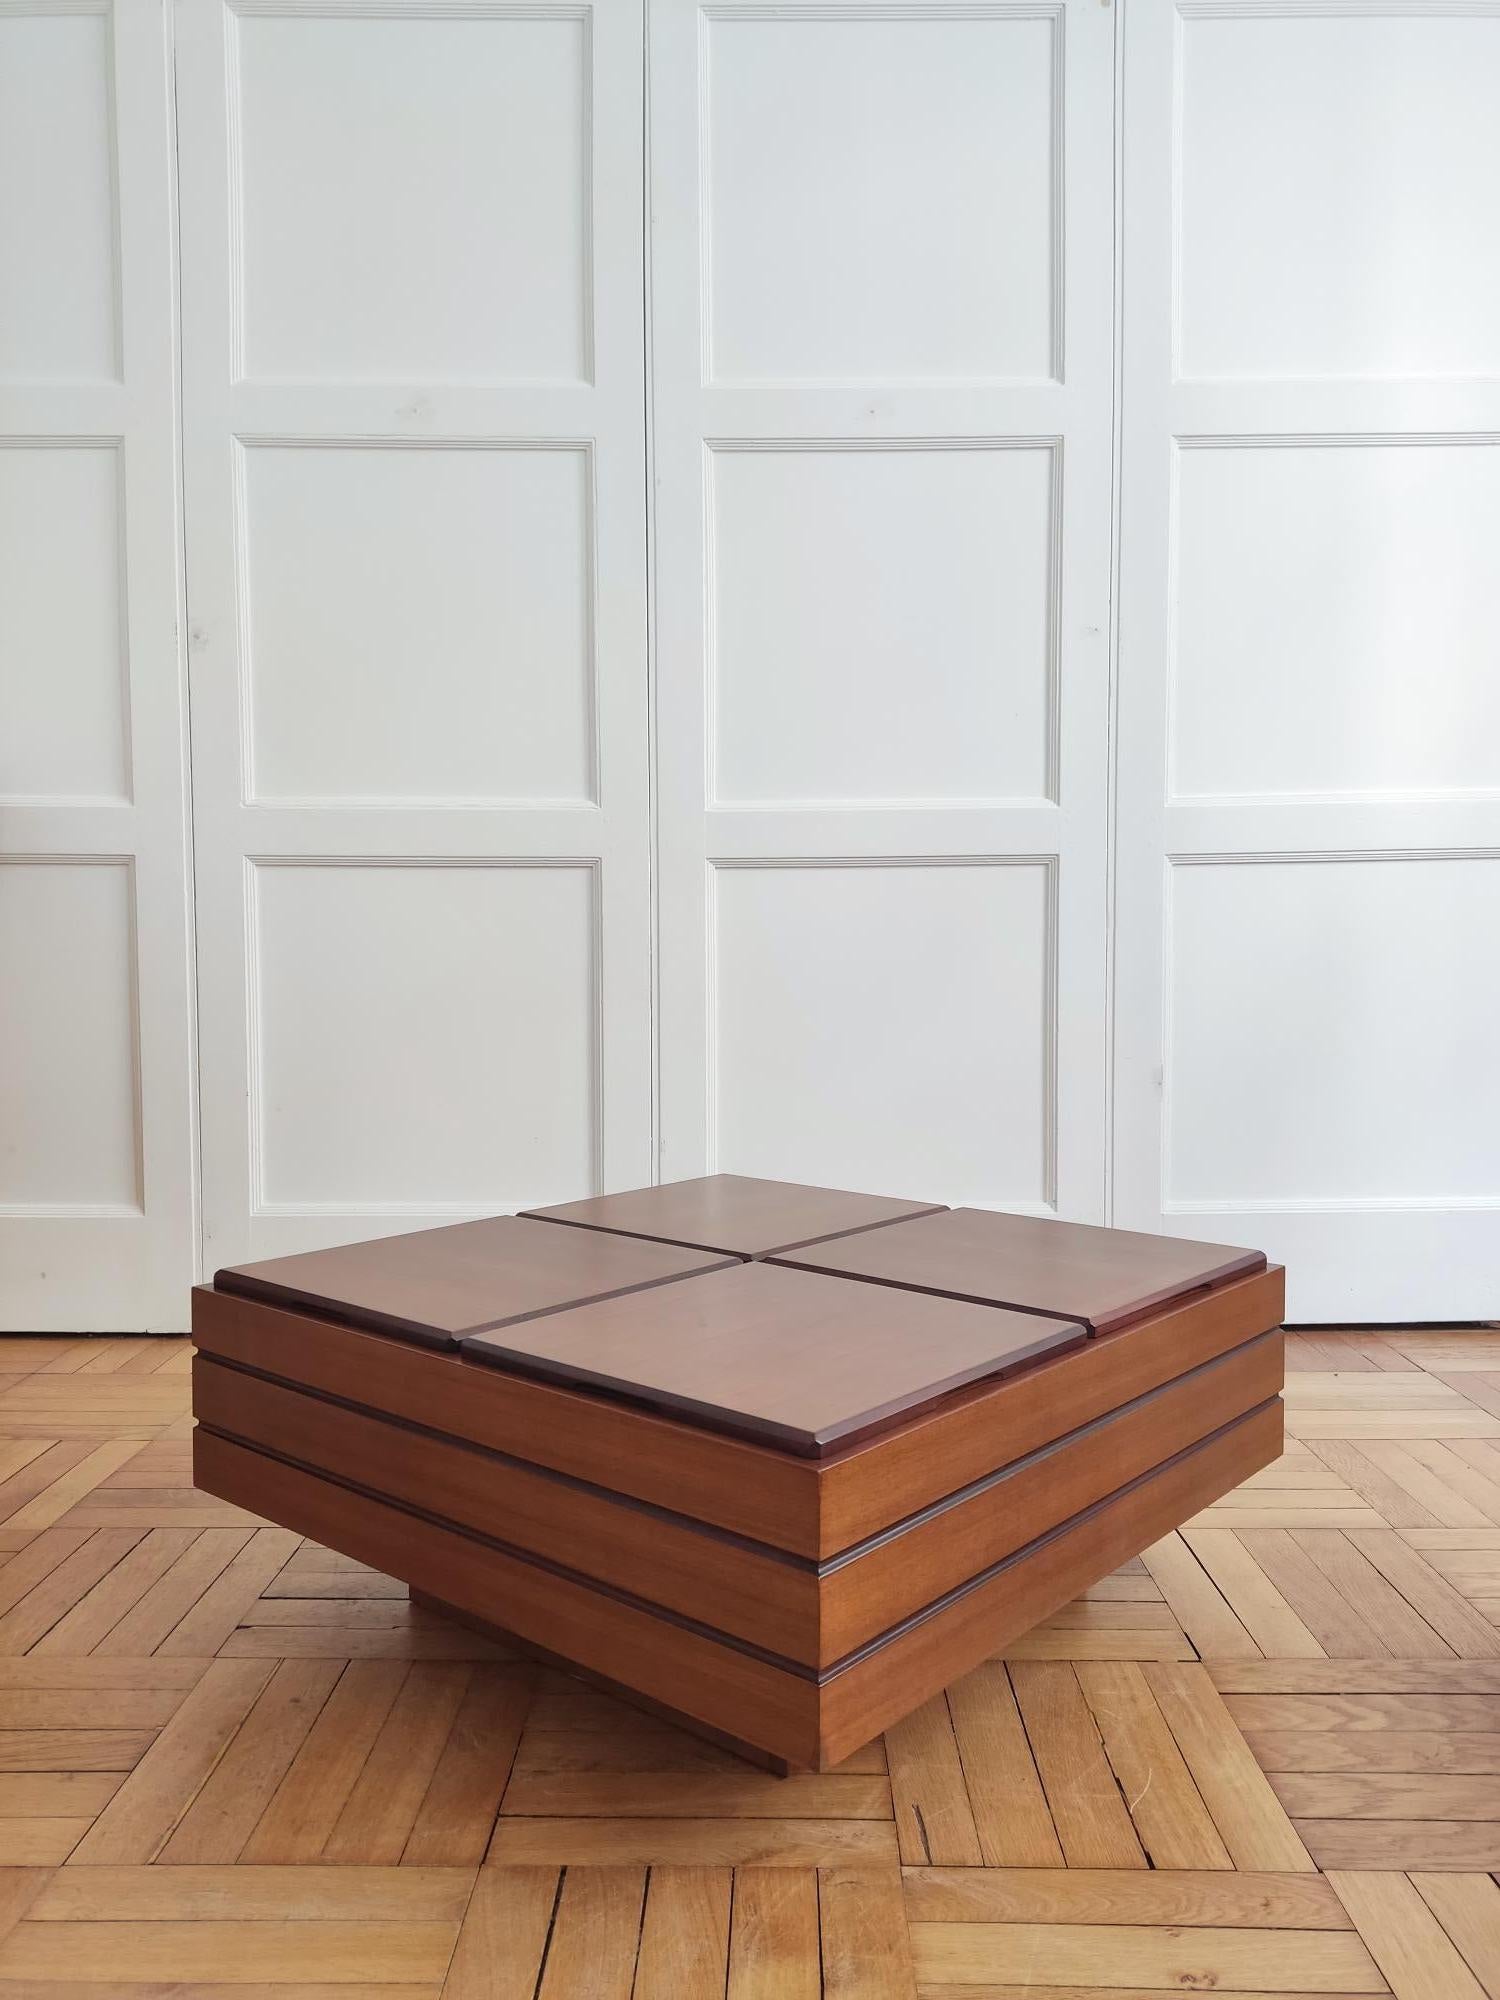 Table basse iconique en bois de teck attribuée à Carlo Hauner et fabriquée par Format Italy 60s.
La table est divisée en 4 cubes, chacun doté d'un couvercle, ce qui la rend très pratique à utiliser.

Carlo Hauner (ICon 1927-1997) est connu pour ses